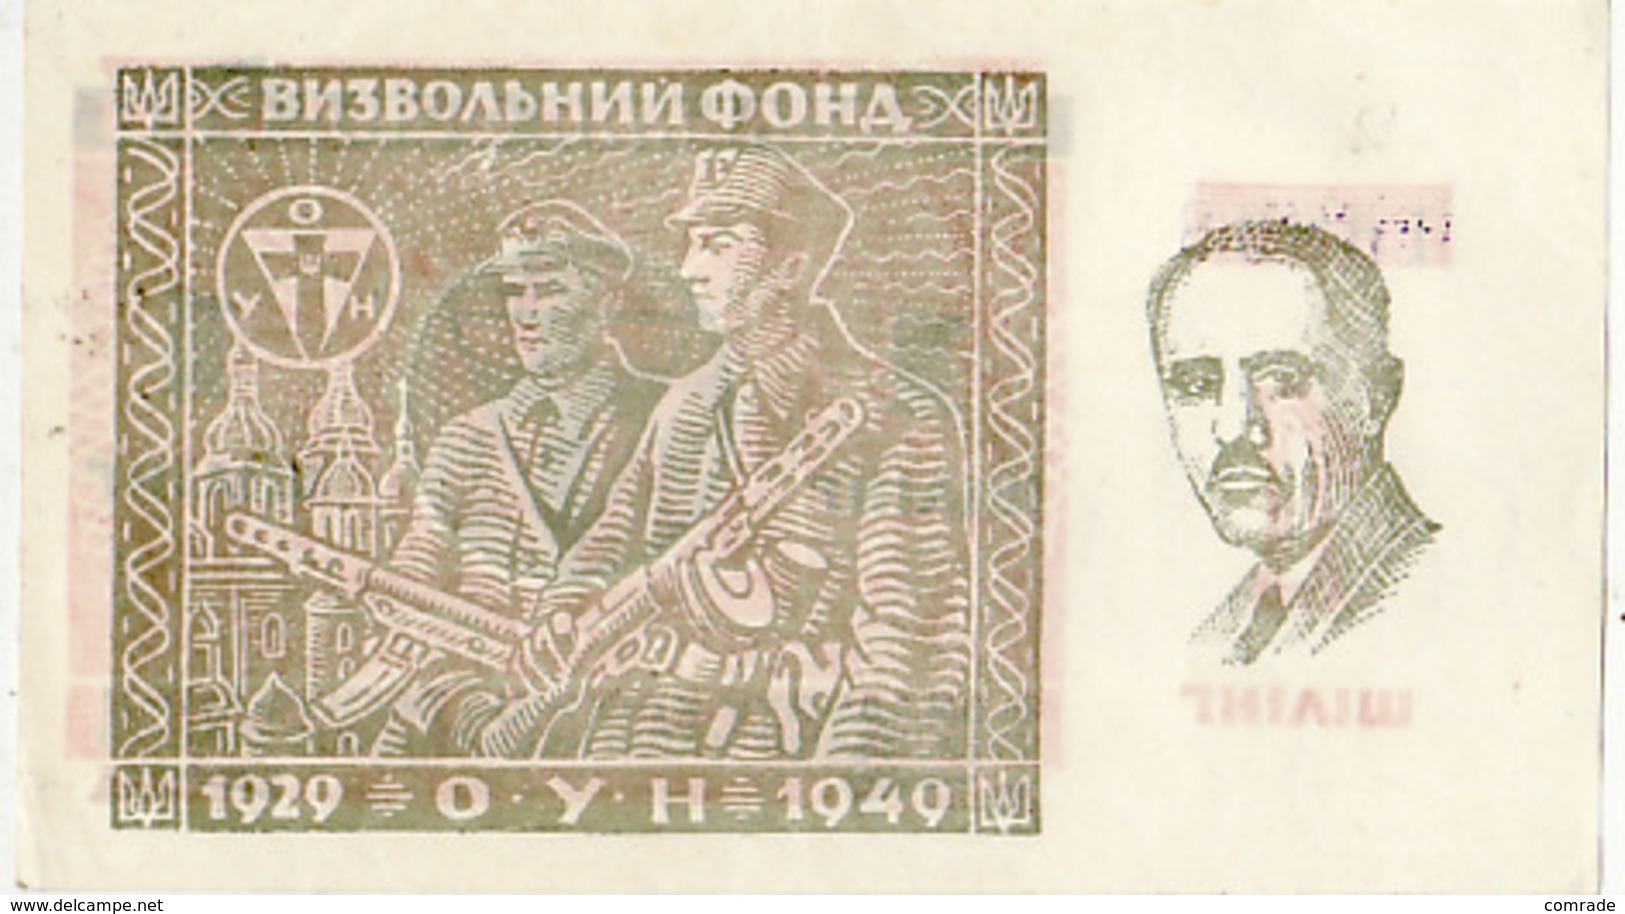 Ukraine Banknote Liberation Fund 1 Shilling OUN 1929 1949 Flag. UPA - Ukraine